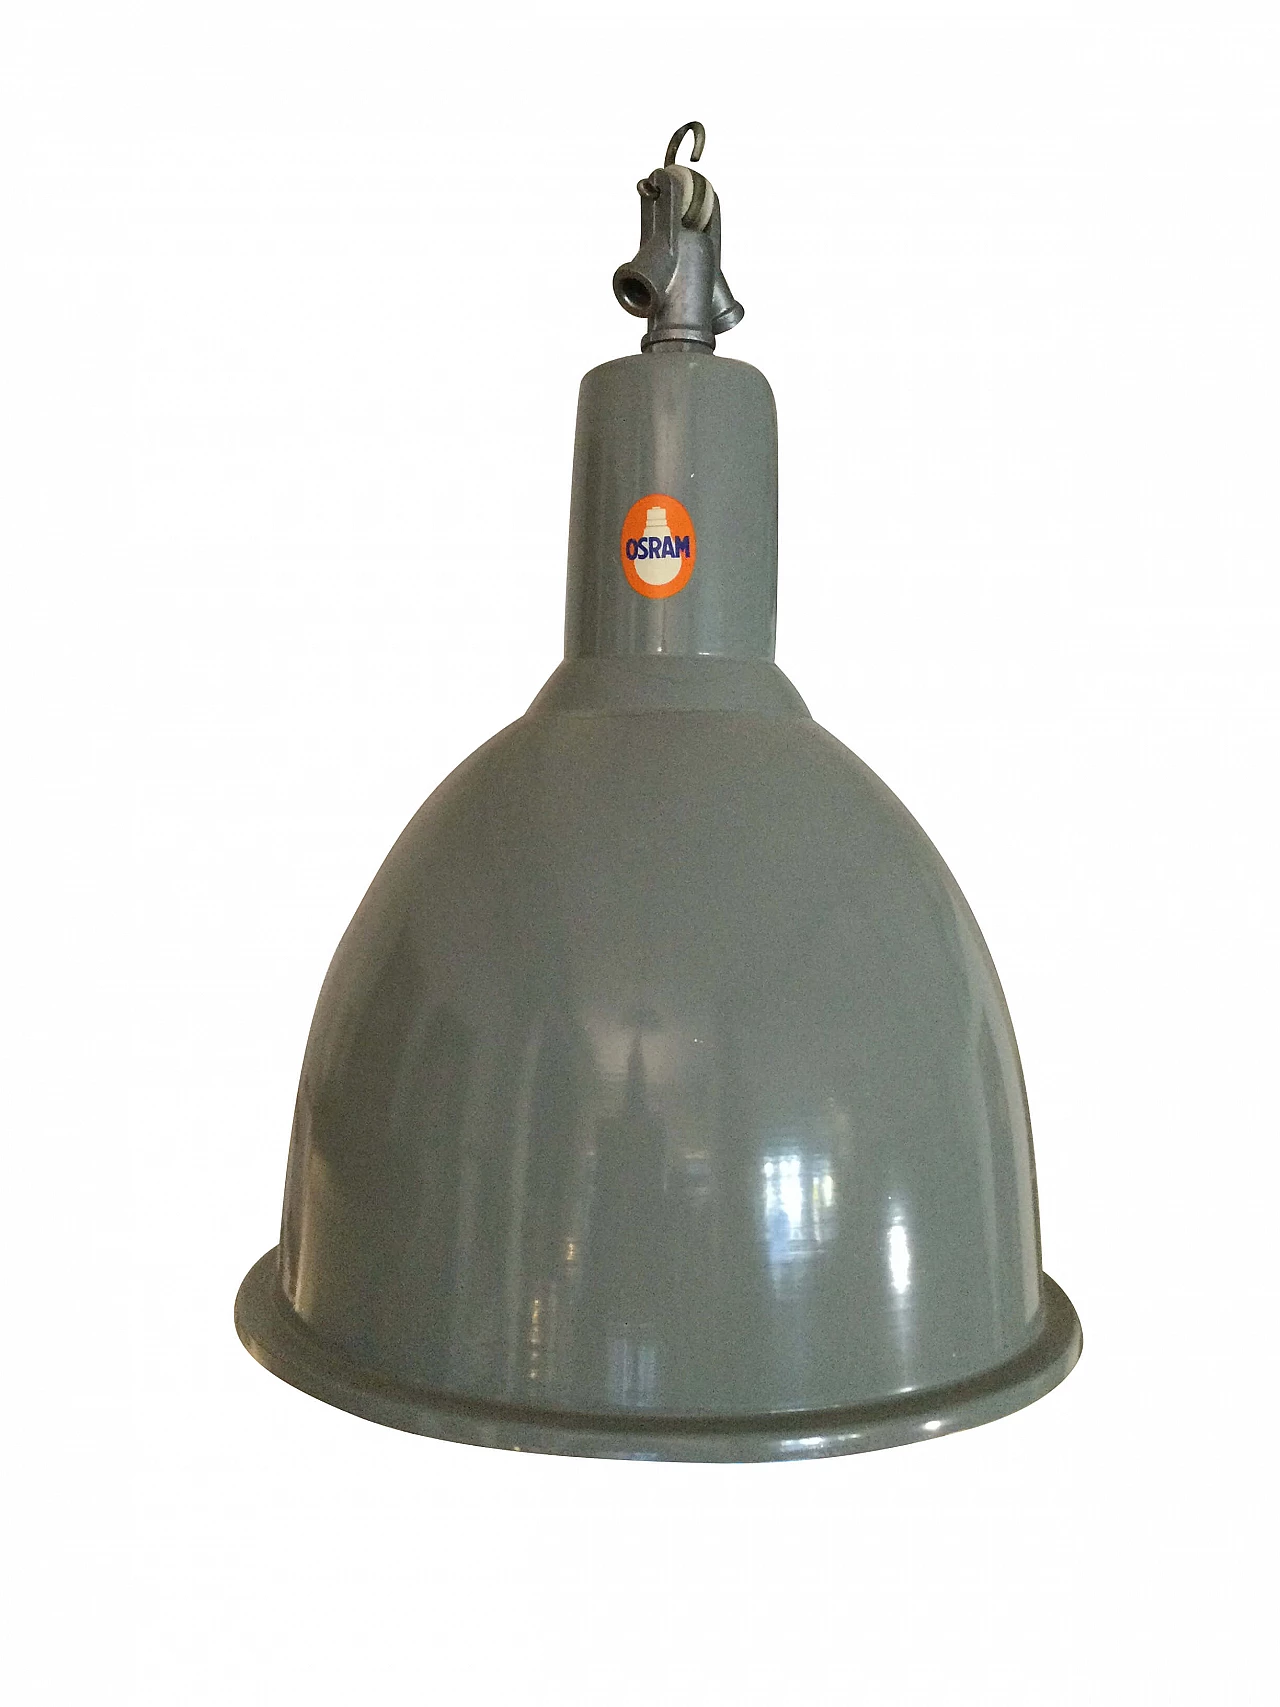 Osram painted aluminium lamp, 1970s 1282943